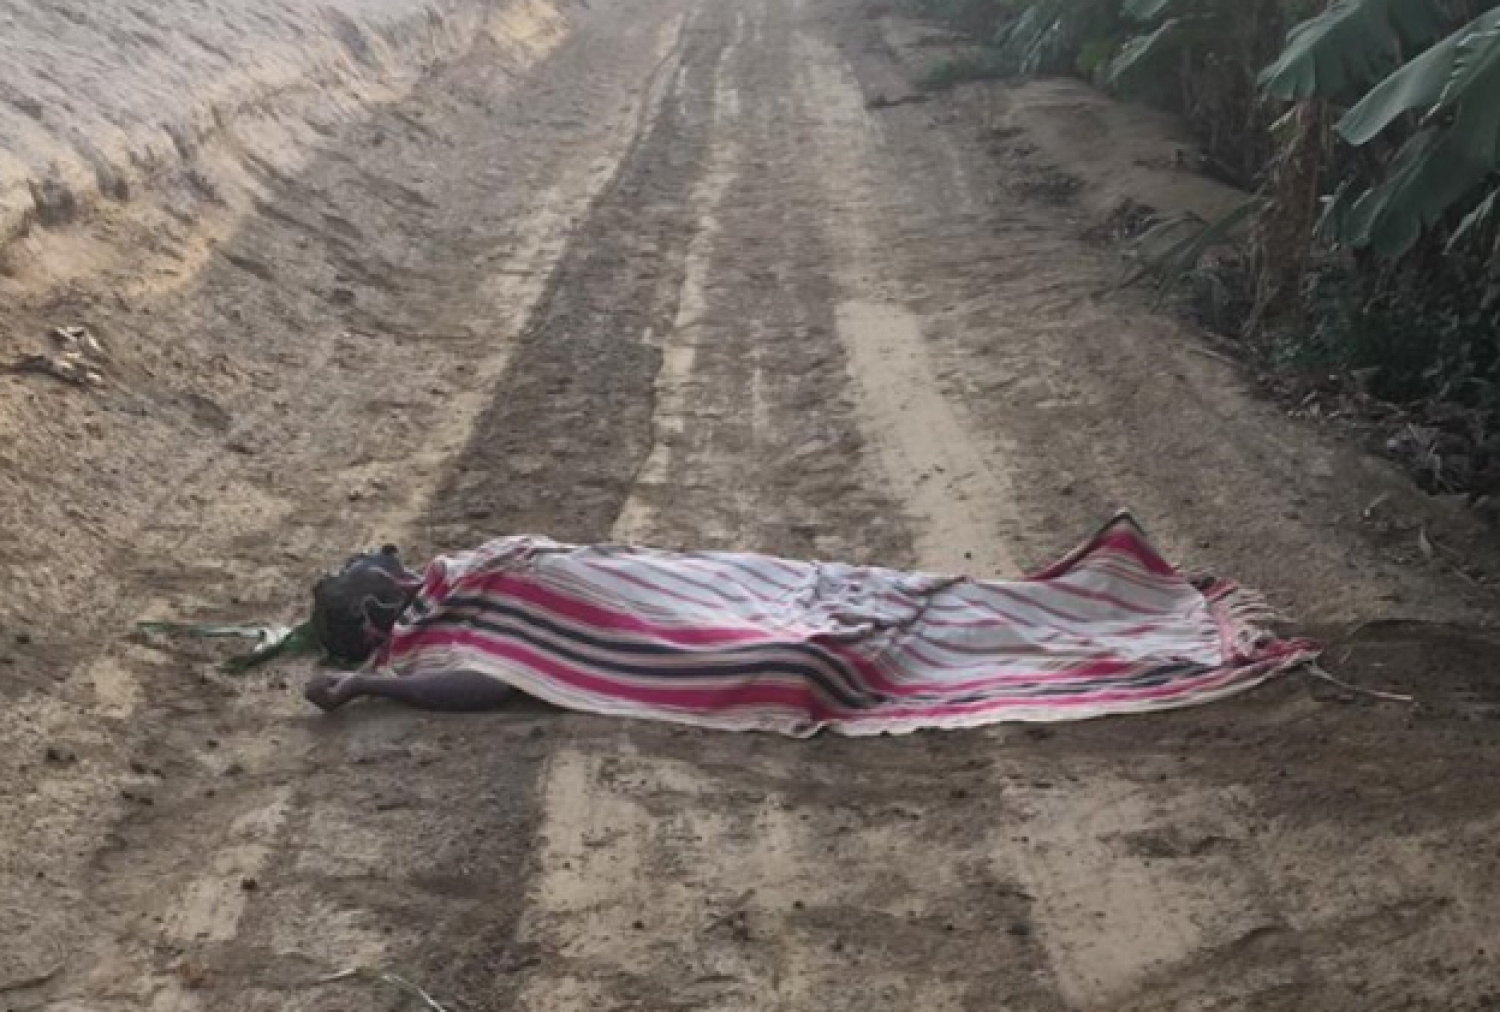 Em duas semanas três corpos enrolados ou cobertos por panos foram encontrados em estradas da Arábia Saudita. Foto: twasul.info.